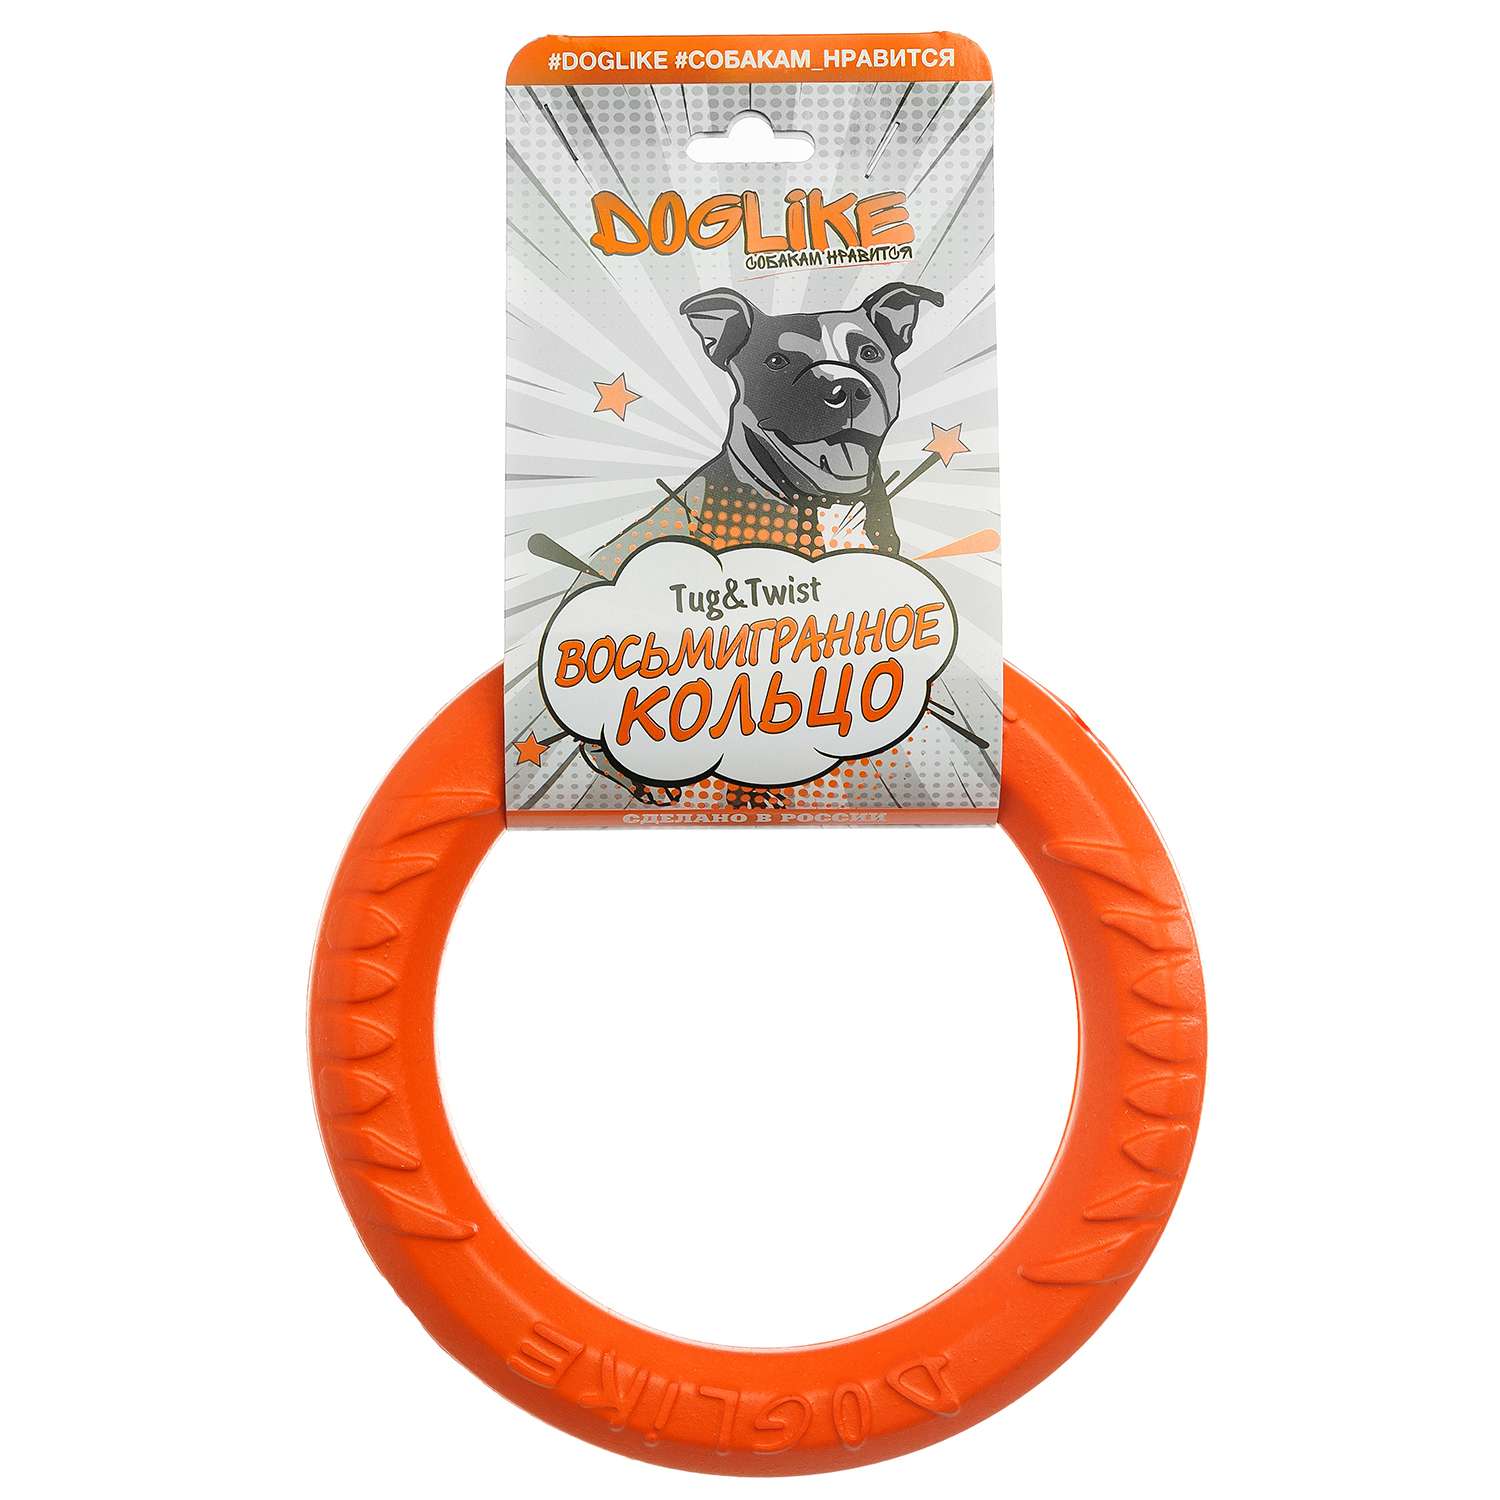 Игрушка для собак Doglike Tug and Twist Кольцо восьмигранное миниатюрное 16.5см Оранжевый - фото 2